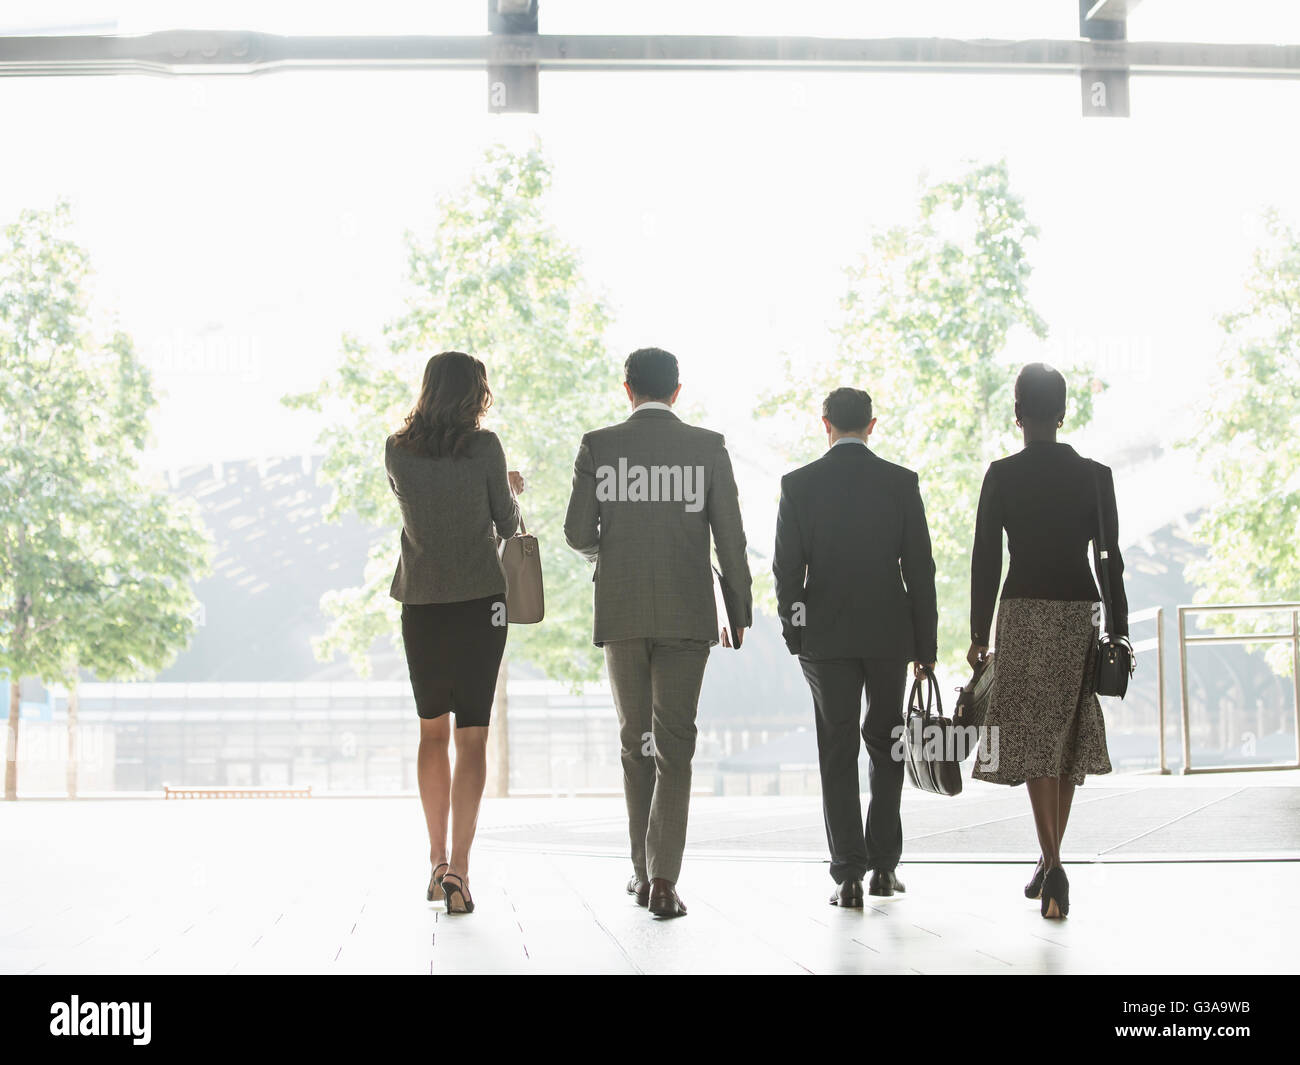 La gente de negocios corporativos caminar en una fila Foto de stock